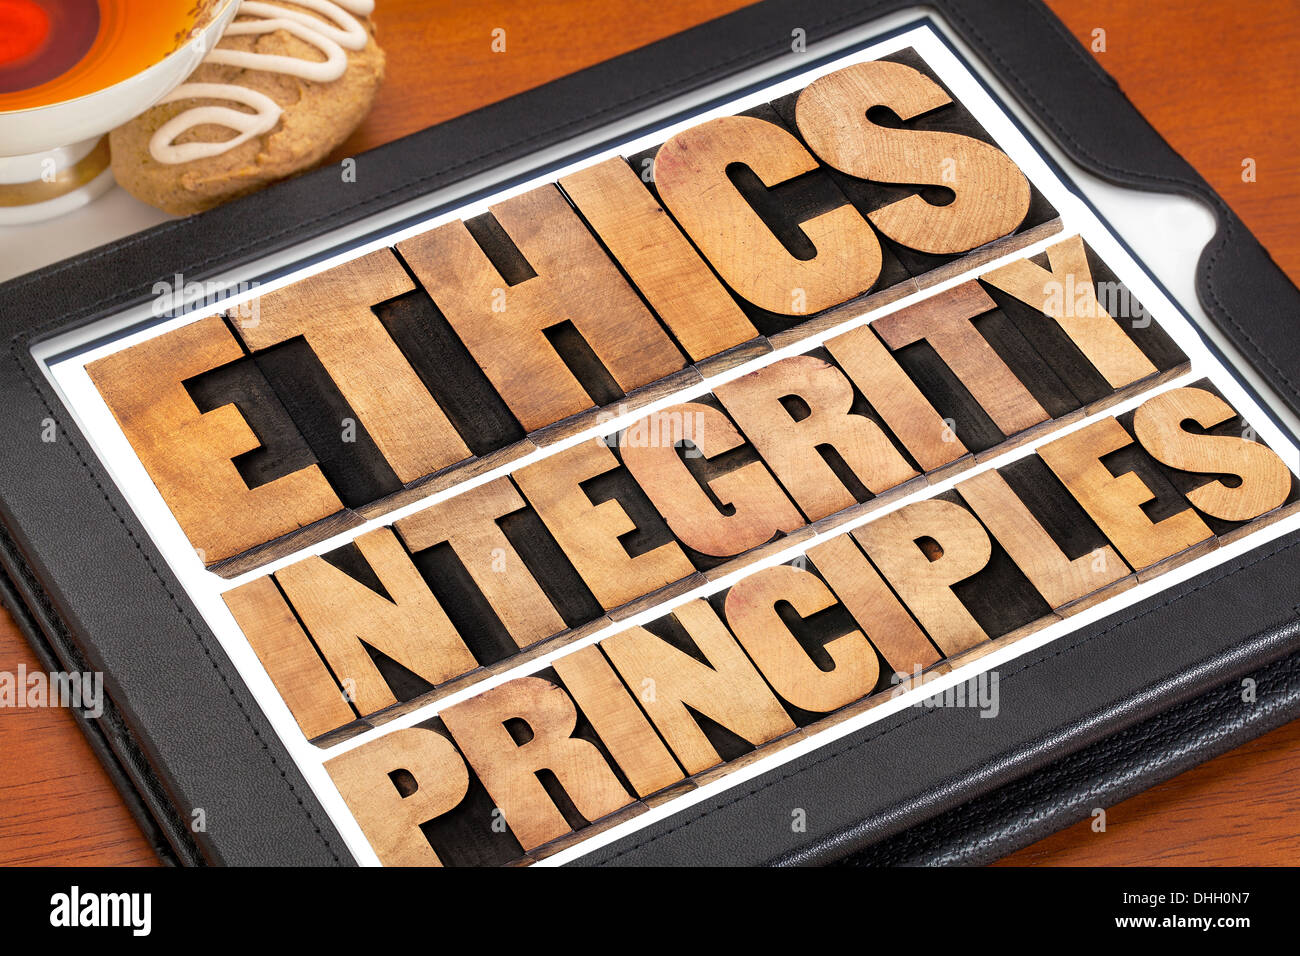 Etica e integrità e di principi astratti di parola - concetto etico su una tavoletta digitale con una tazza di tè Foto Stock